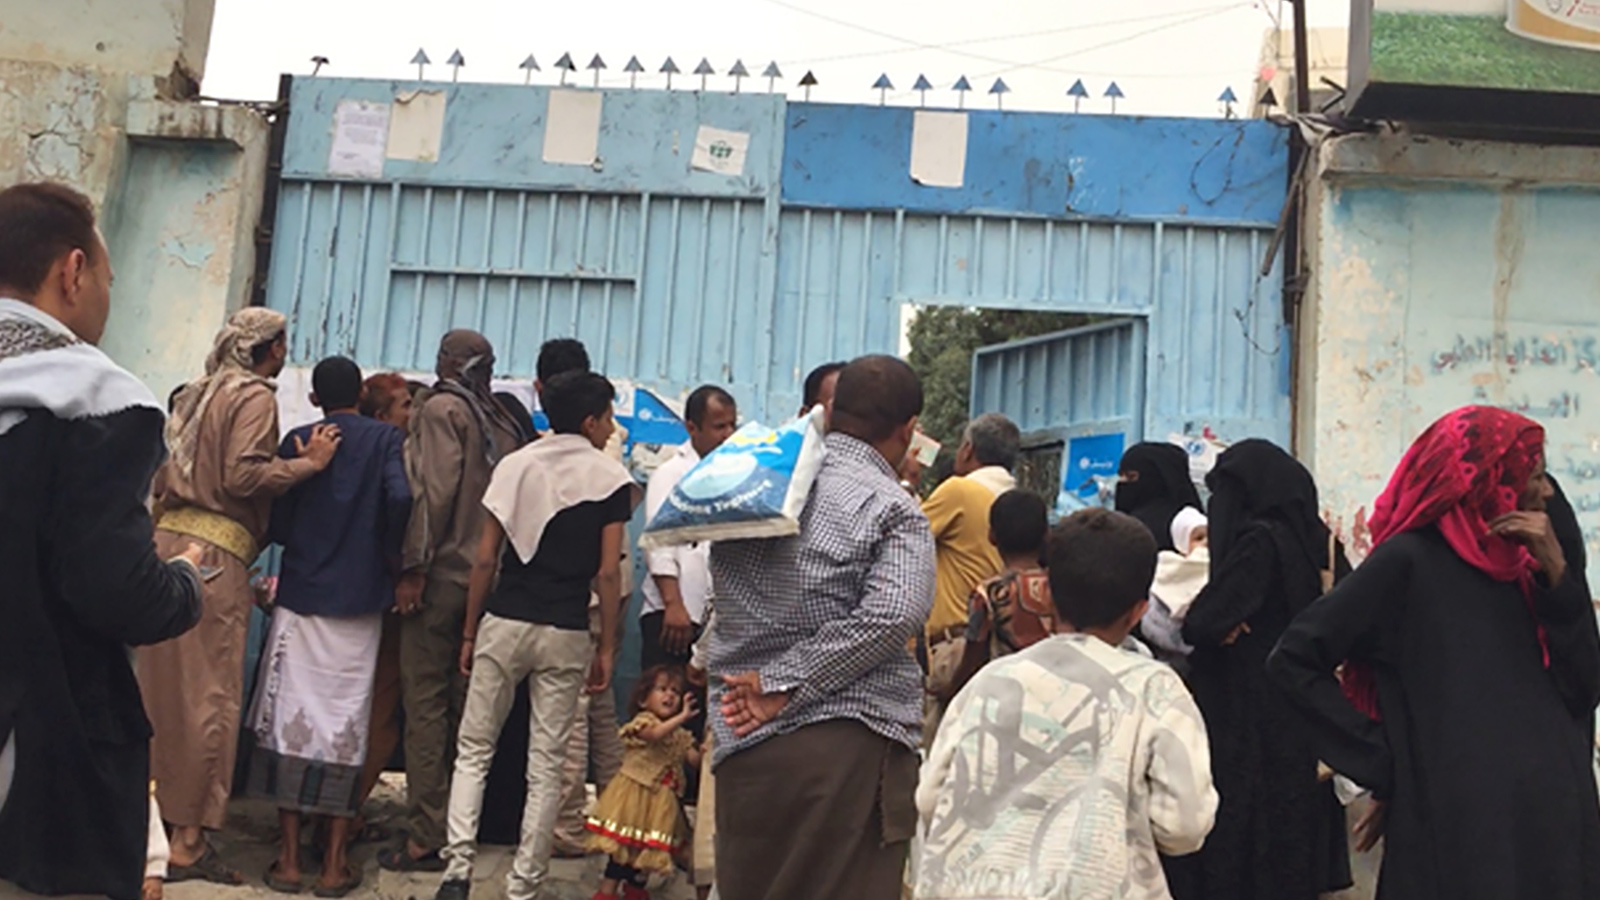 بعض النازحين من الحديدة إلى العاصمة صنعاء باتوا يفكرون في العودة لمدينتهم بسبب انعدام شروط اللجوء في العاصمة(الصحافة البريطانية)